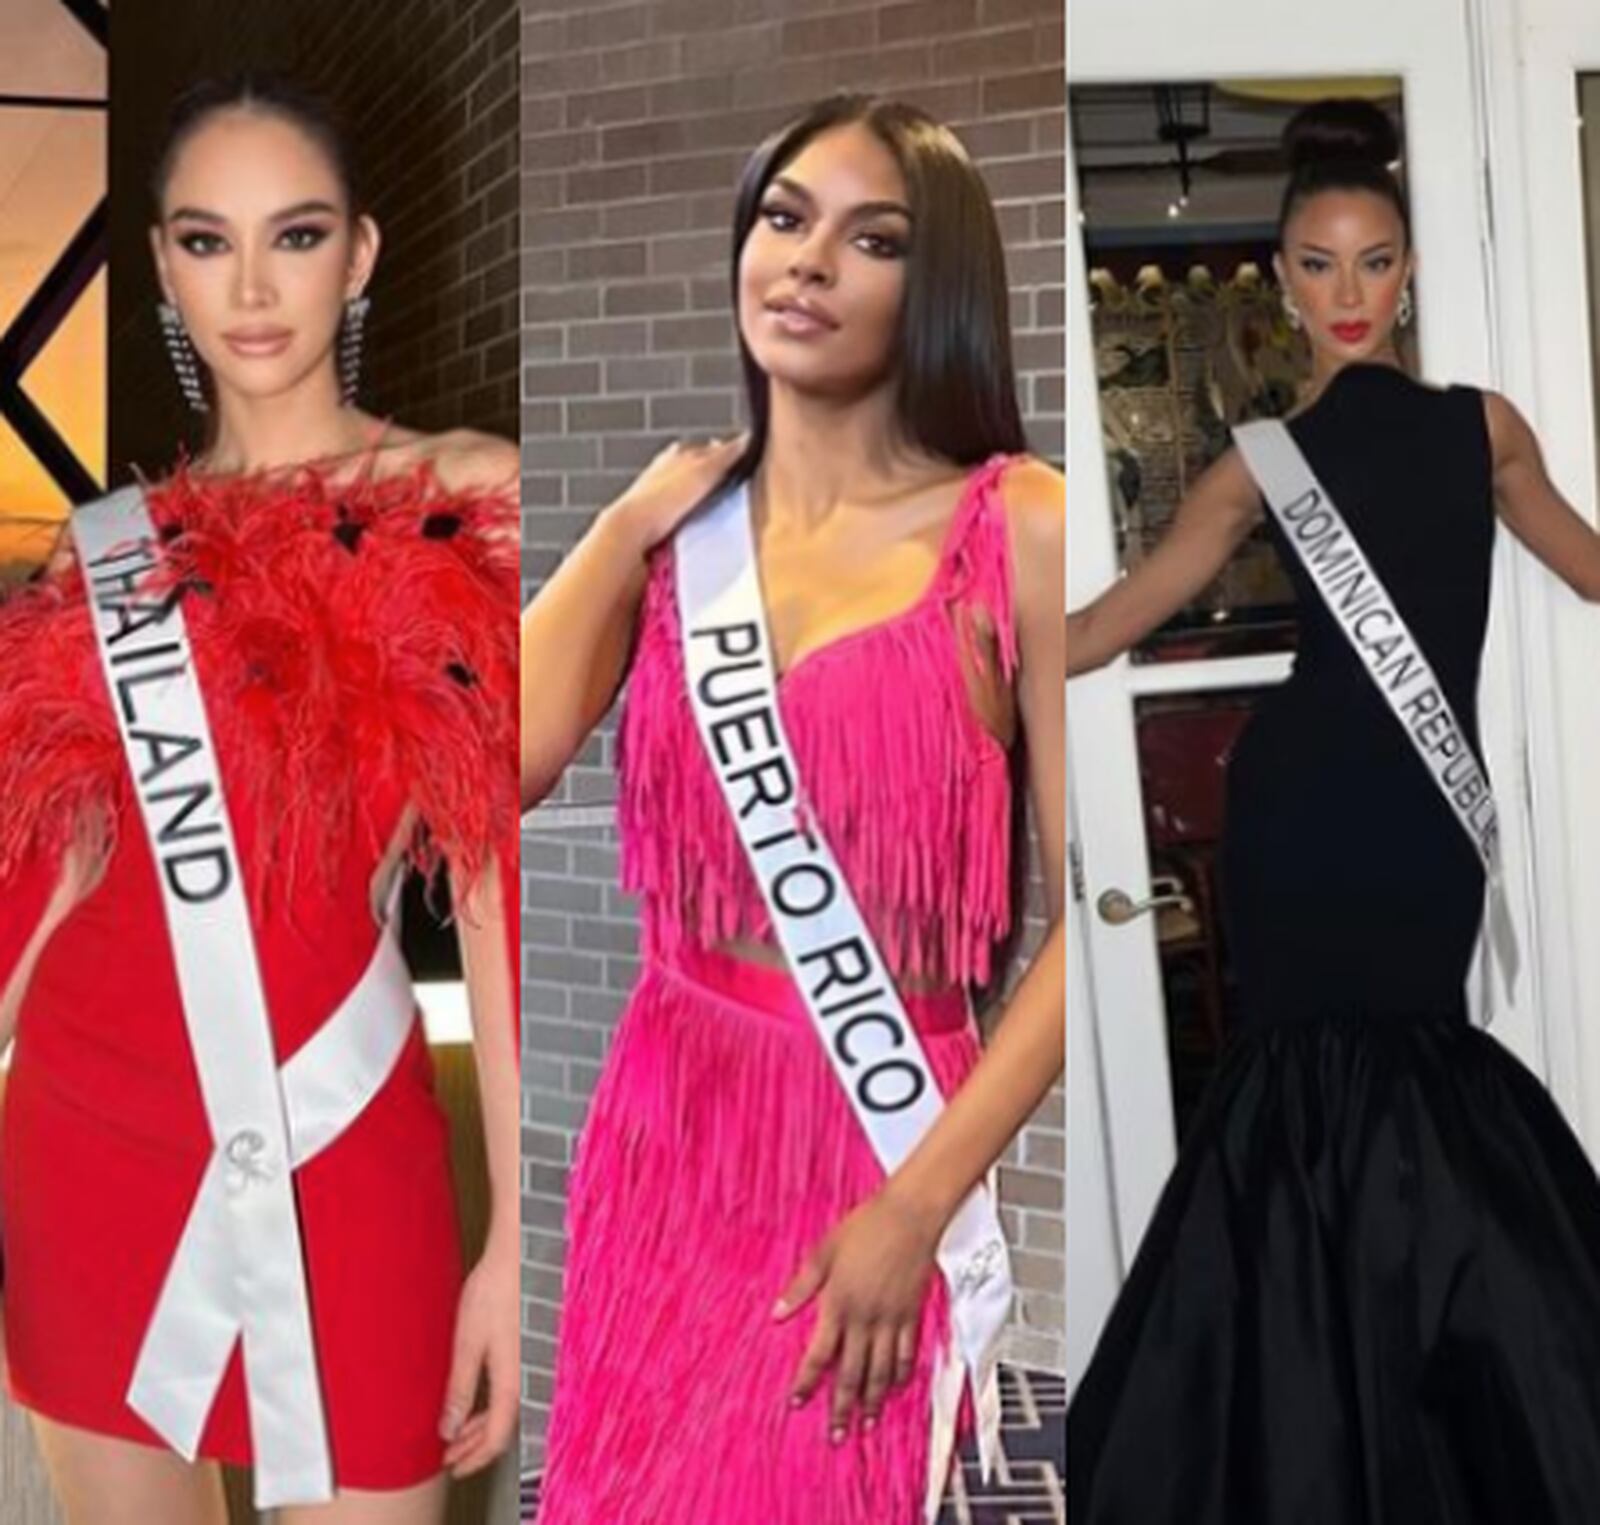 Favoritas antes de la preliminar de Miss Universo 2022 Metro Puerto Rico